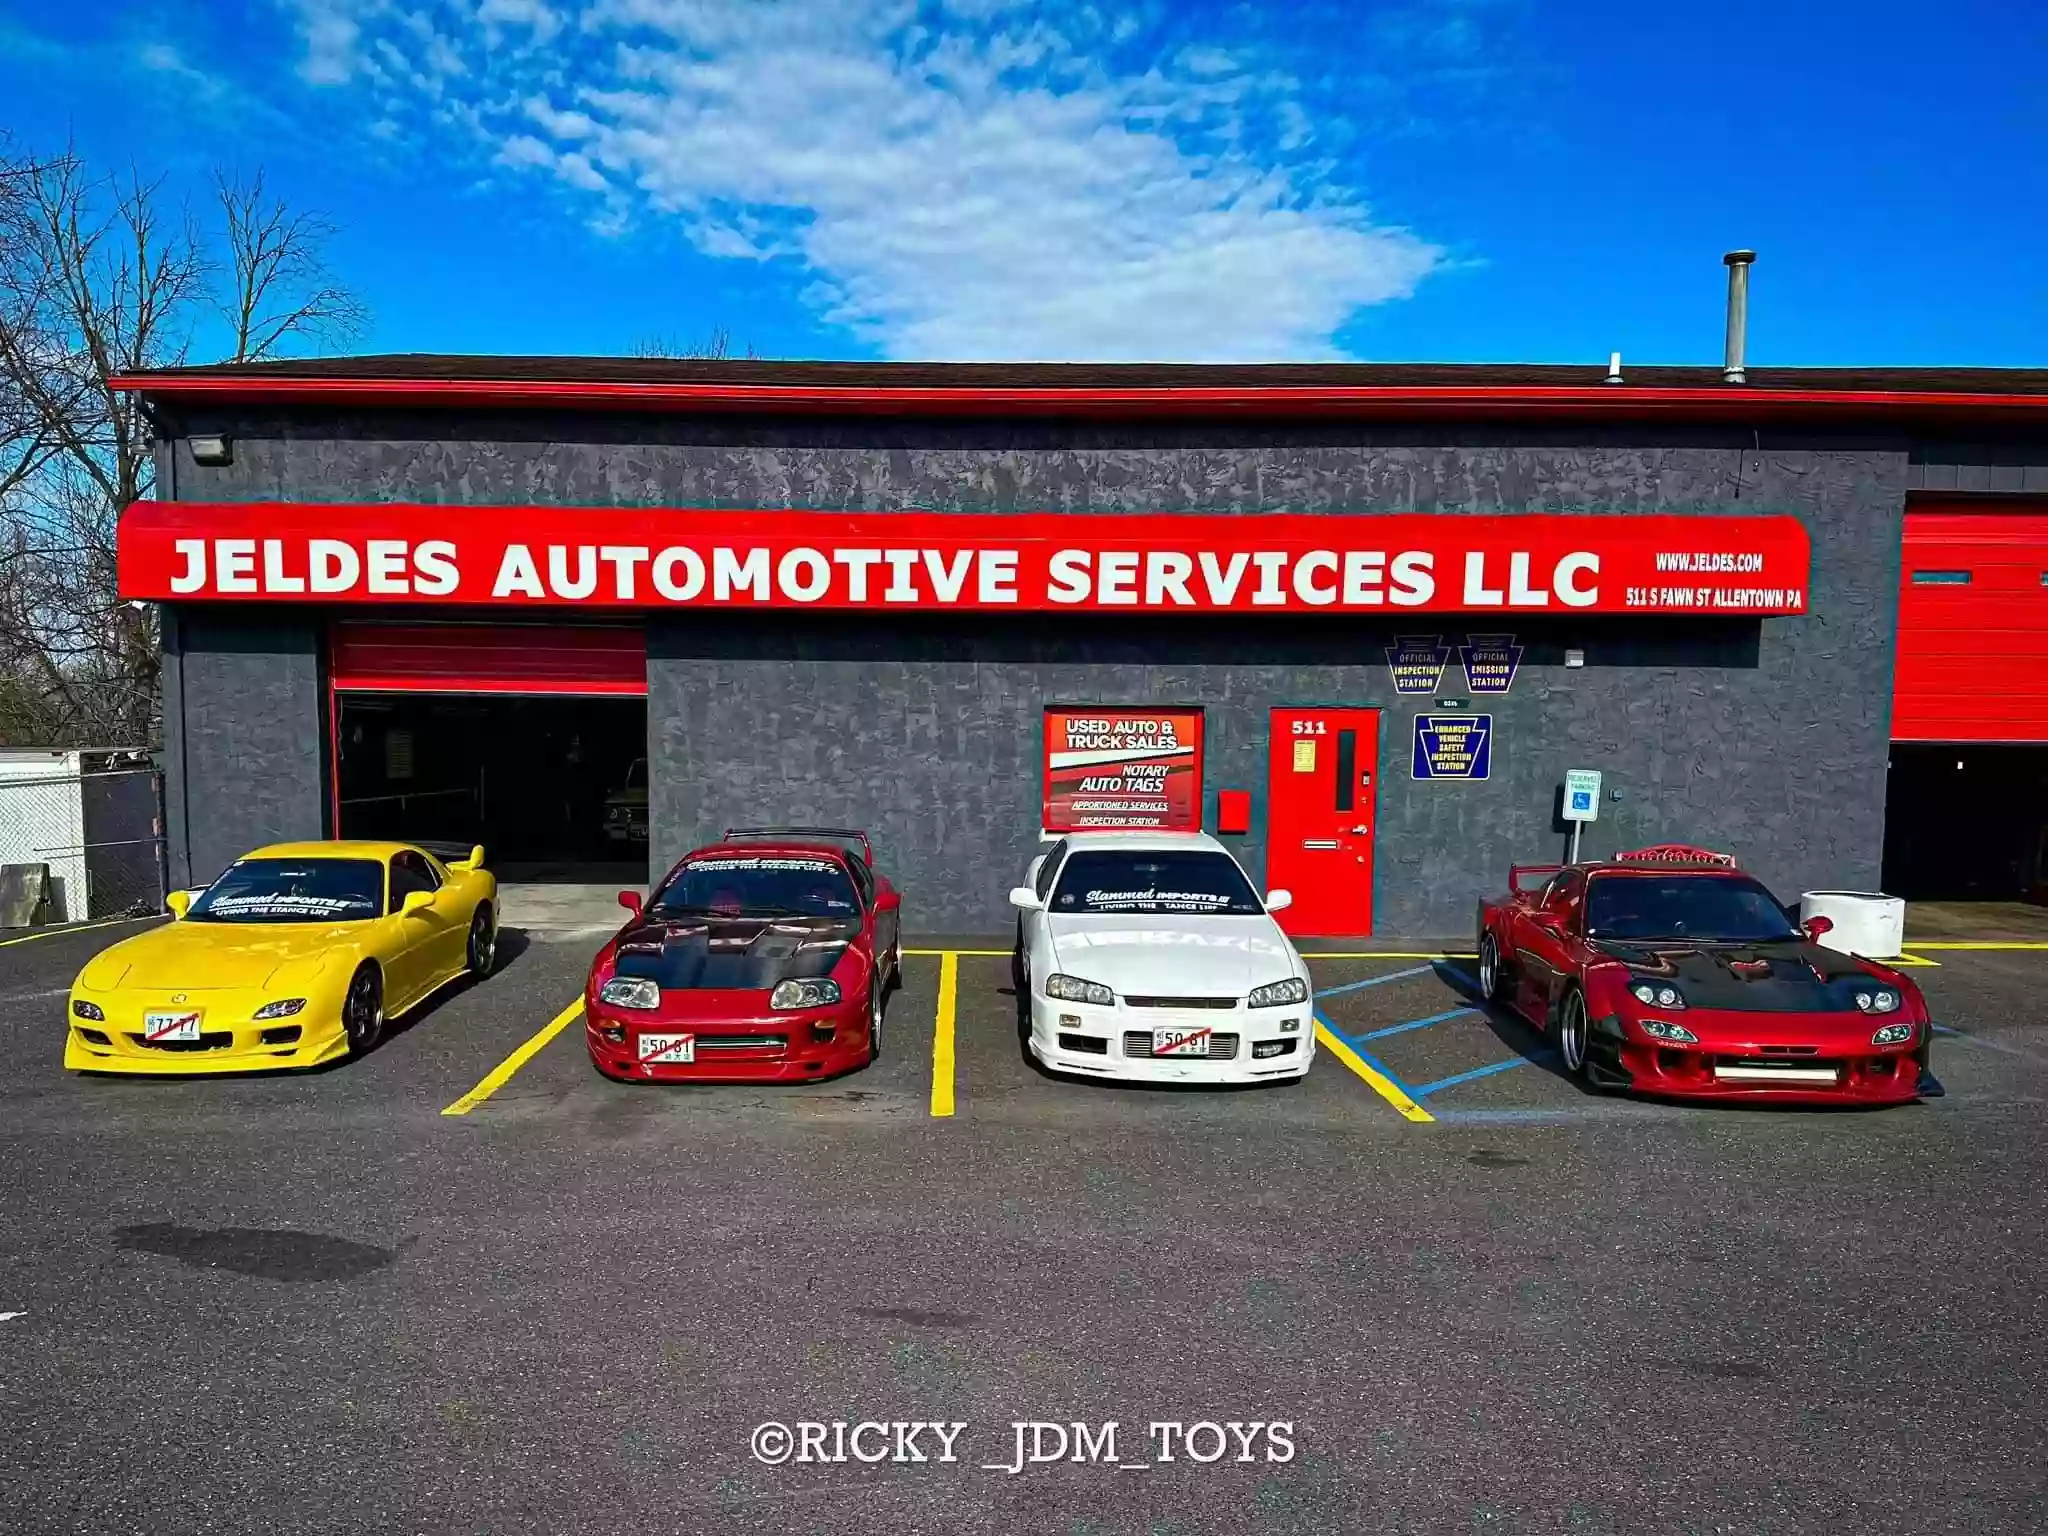 JELDES AUTOMOTIVE SERVICES LLC